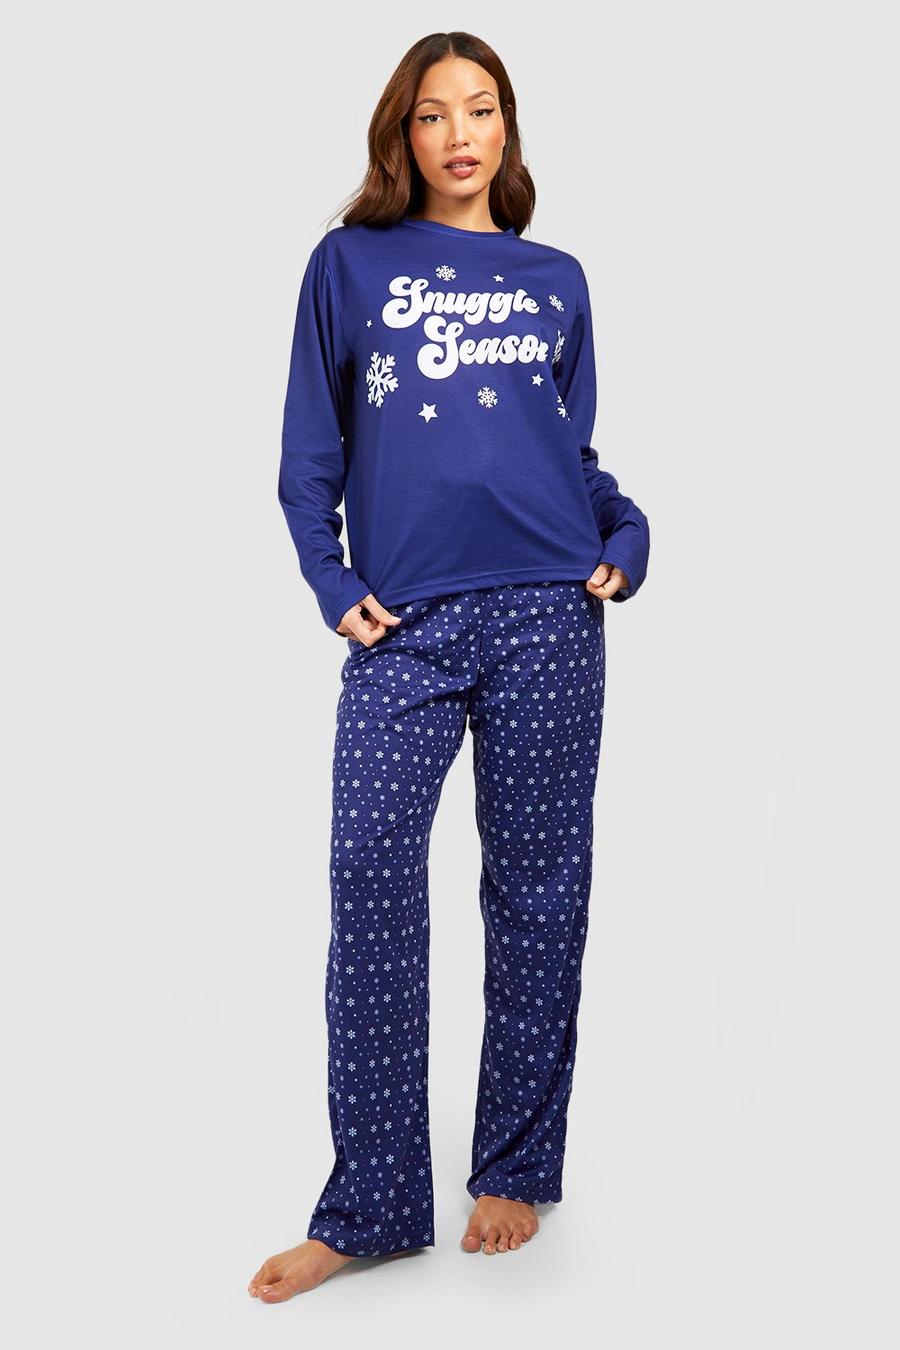 Blue Tall Snuggle Season Pyjama Set